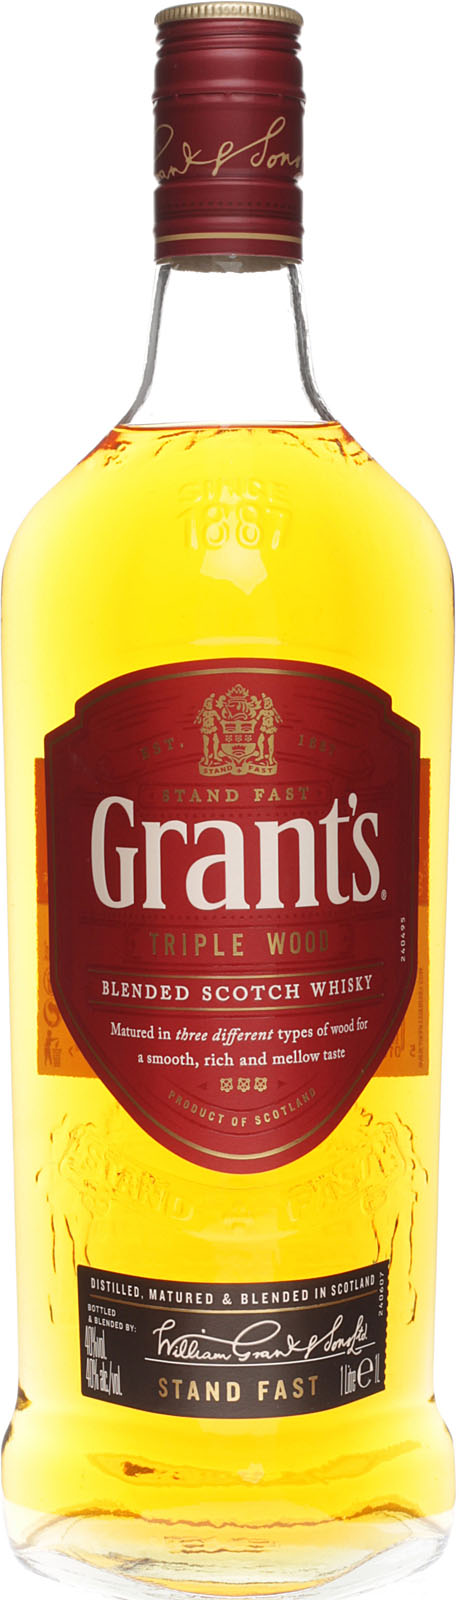 Grants Triple Wood Whisky mit 1000 ml und 40 %